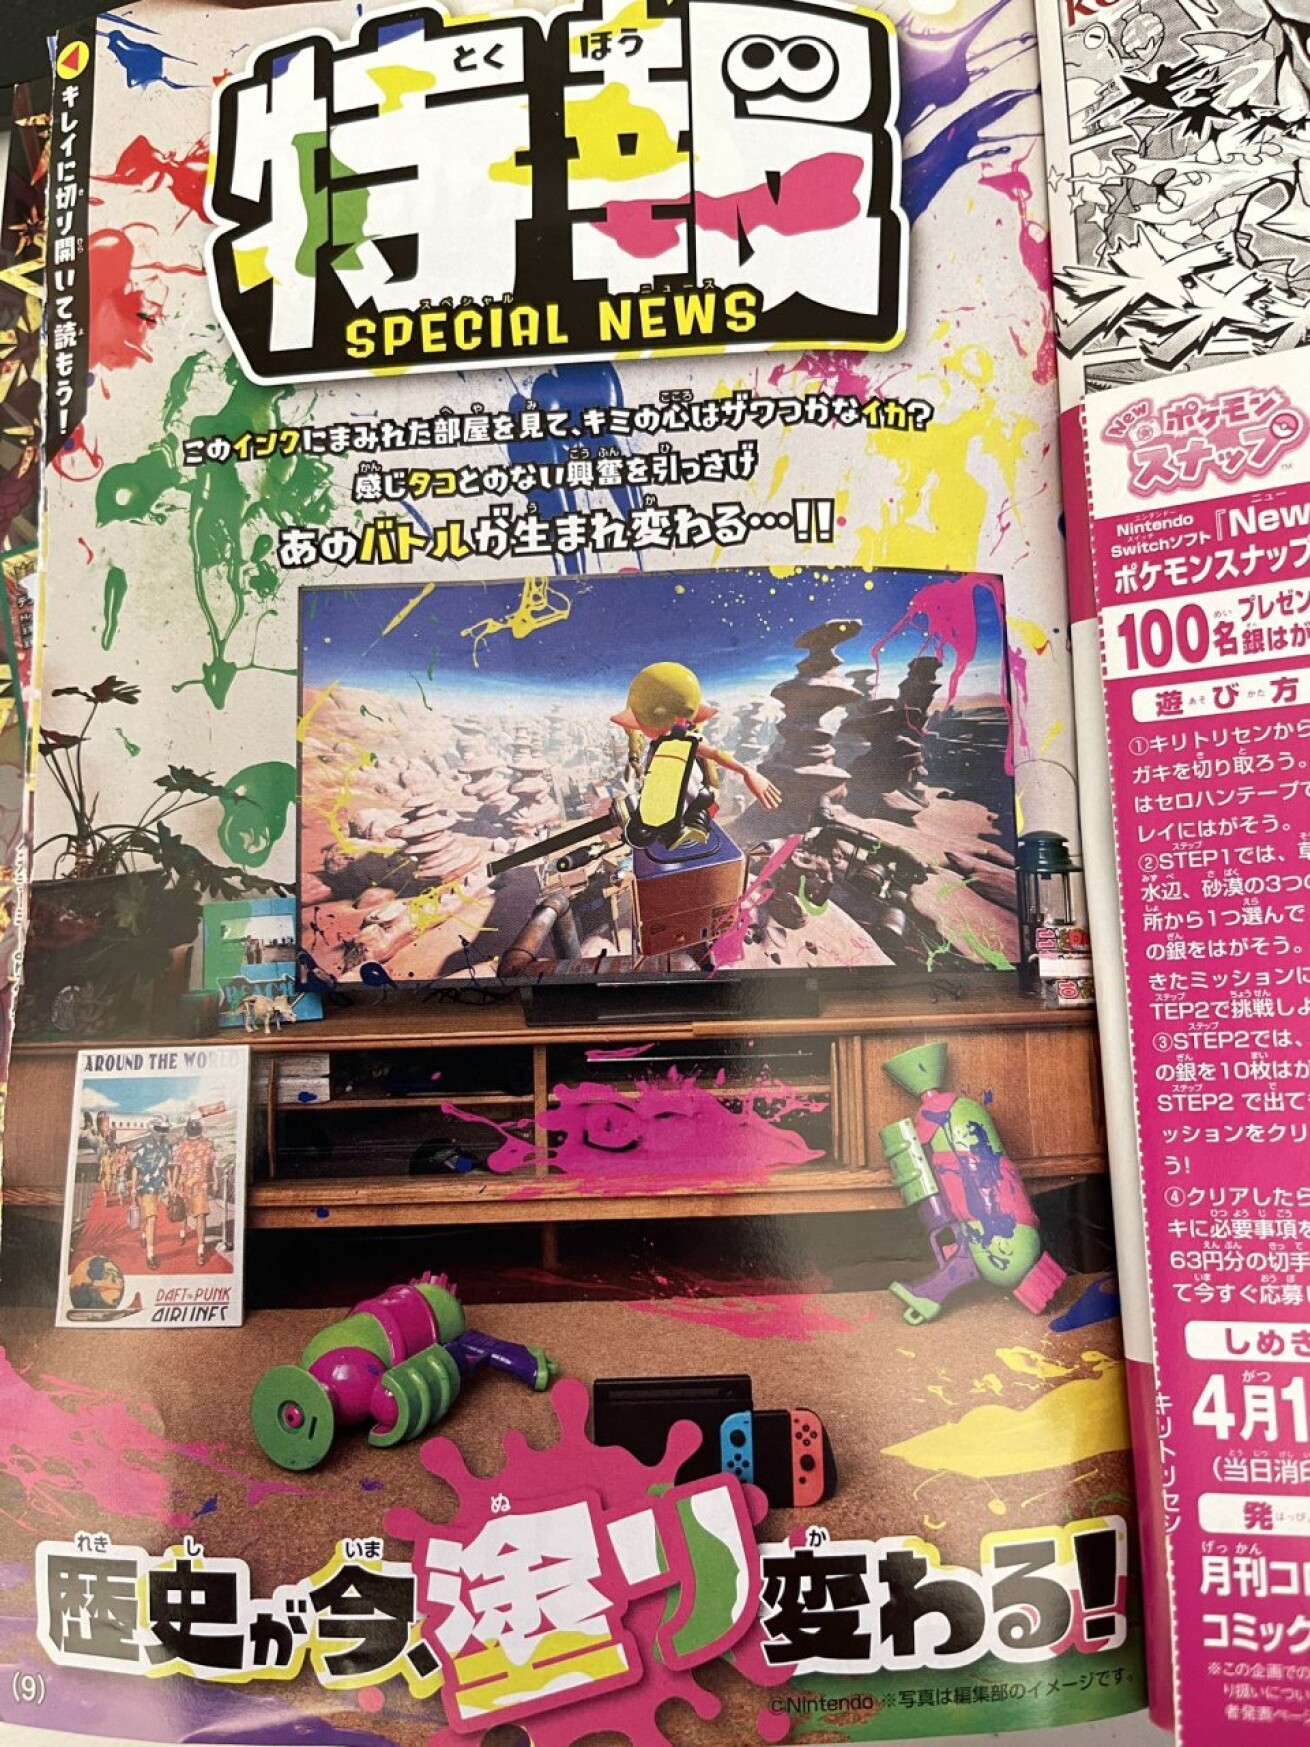 Iflyer コロコロコミックがゲーム Splatoon3 スプラトゥーン3 のニュース記事画像にdaft Punk ダフト パンク の意味深なポスターを入れ コラボか と世界中のファンをザワつかせる騒ぎに